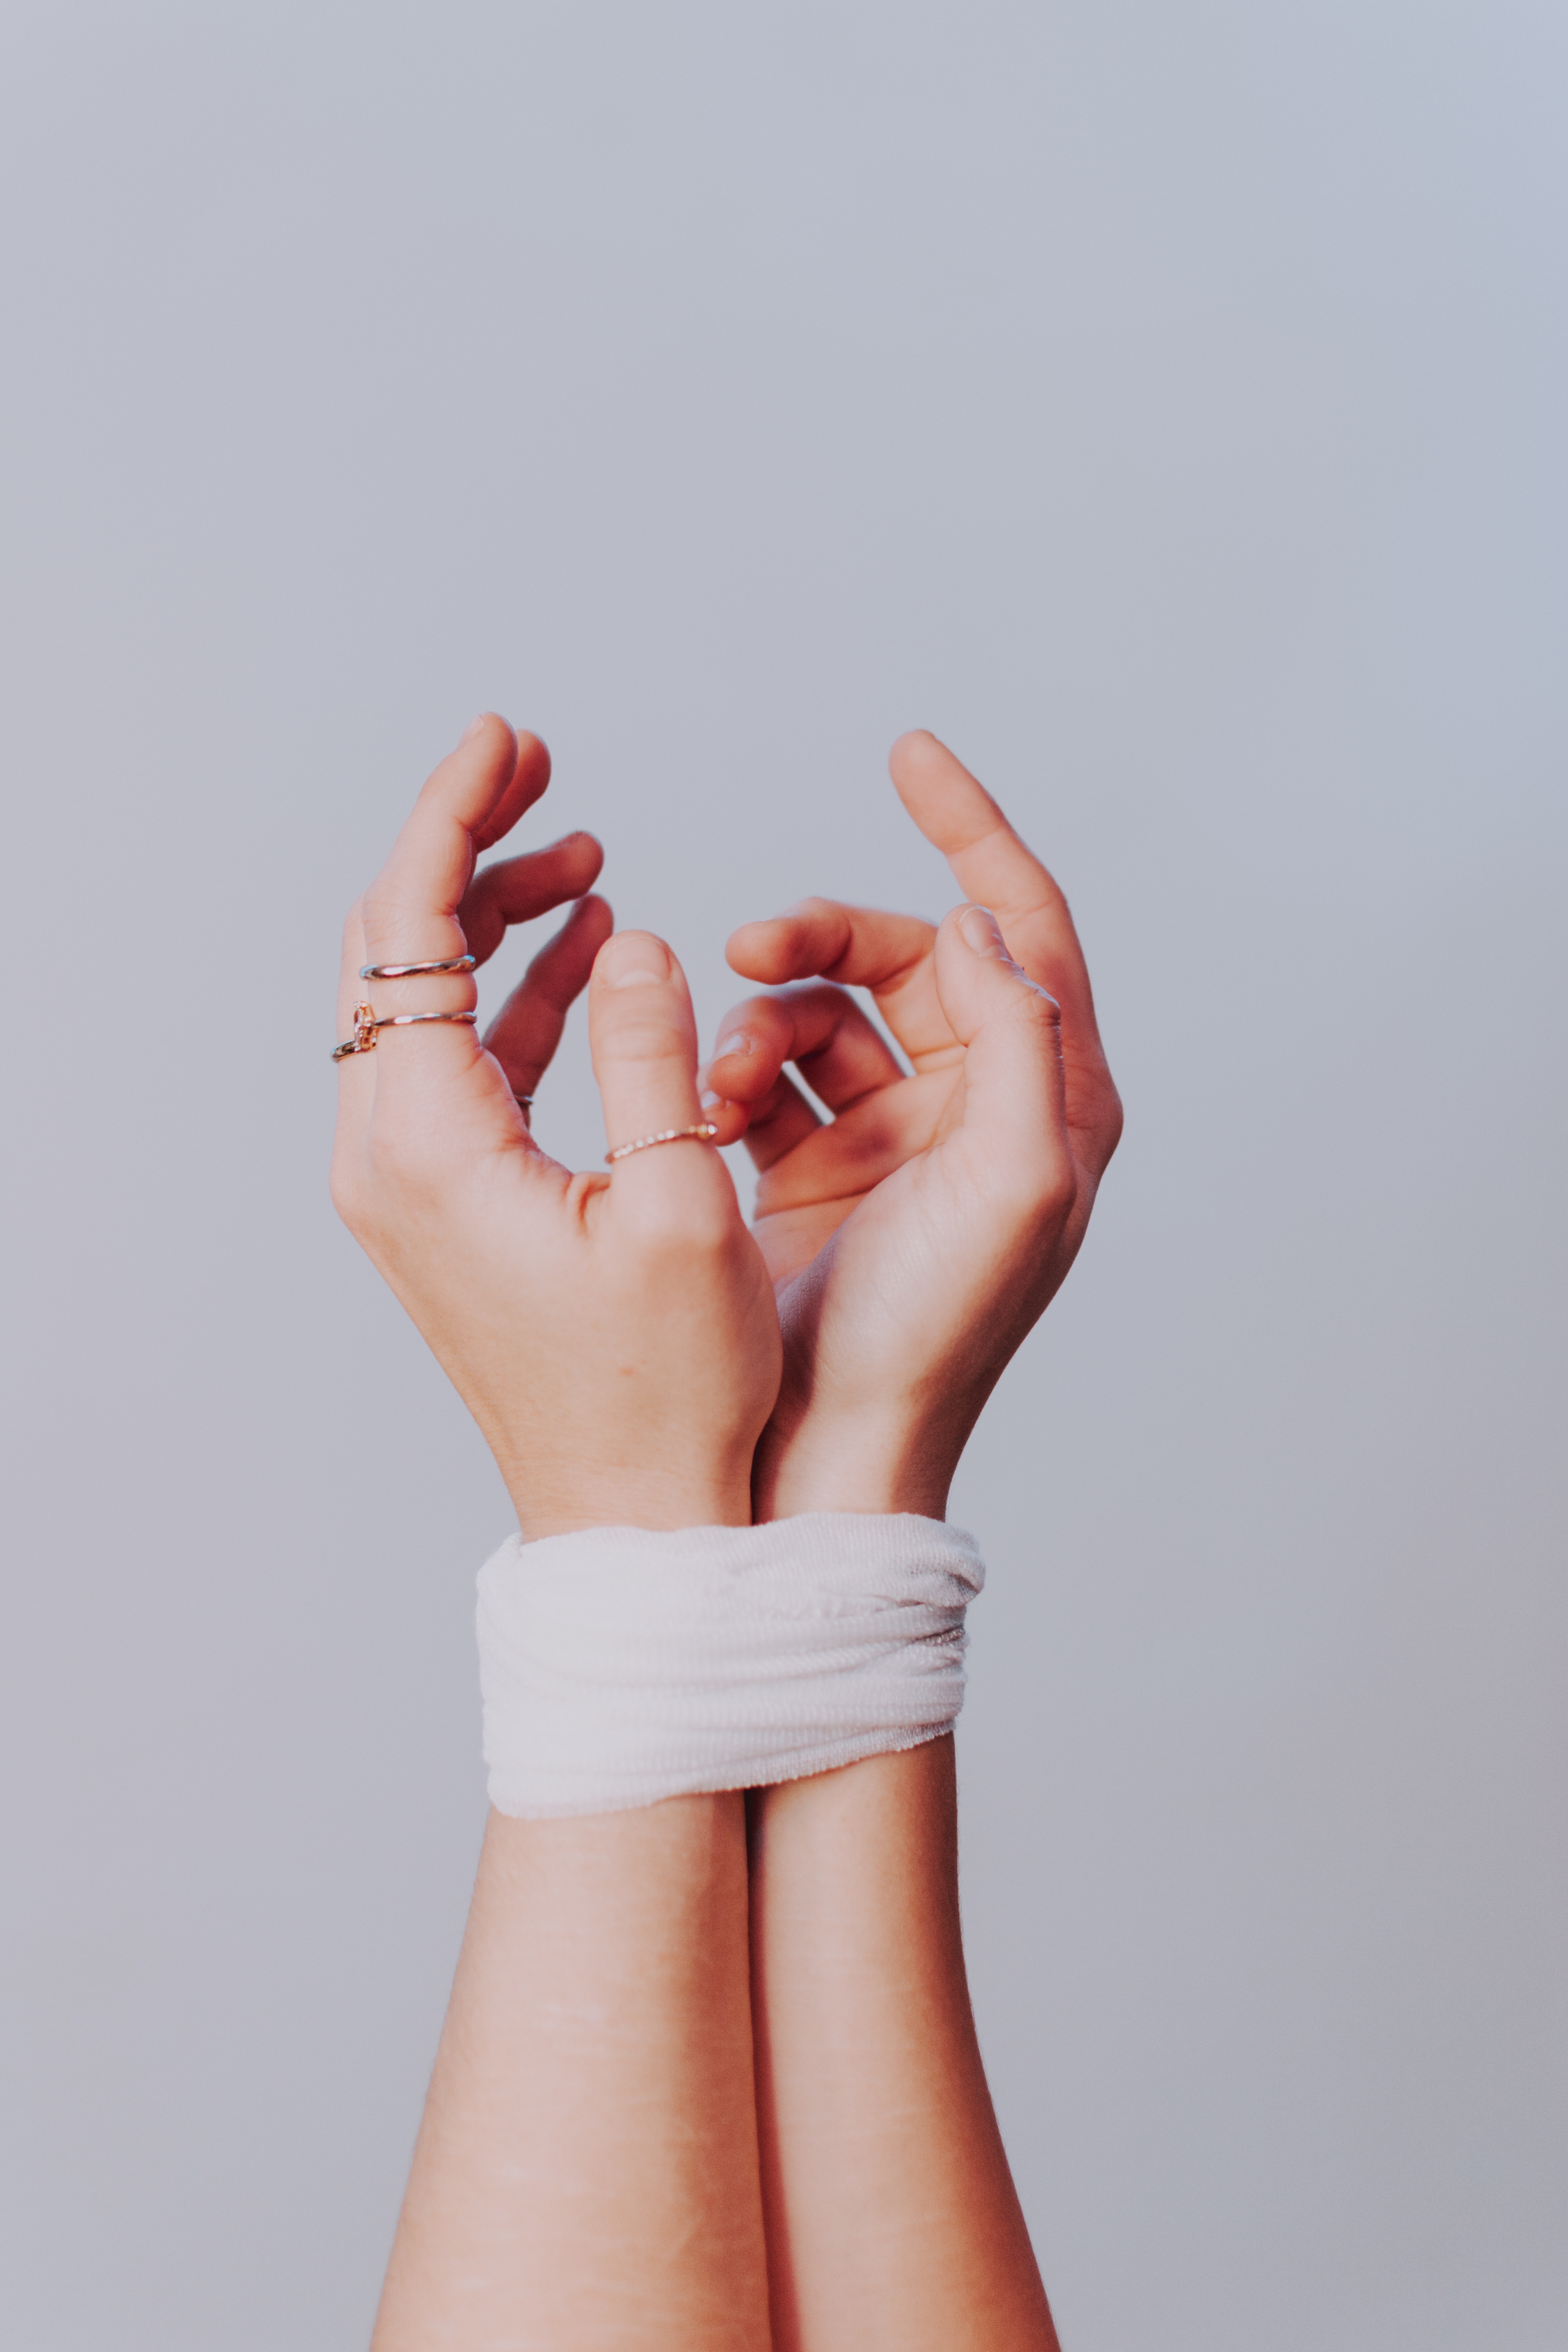 Foto mostra mãos de mulher amarradas por um tecido branco